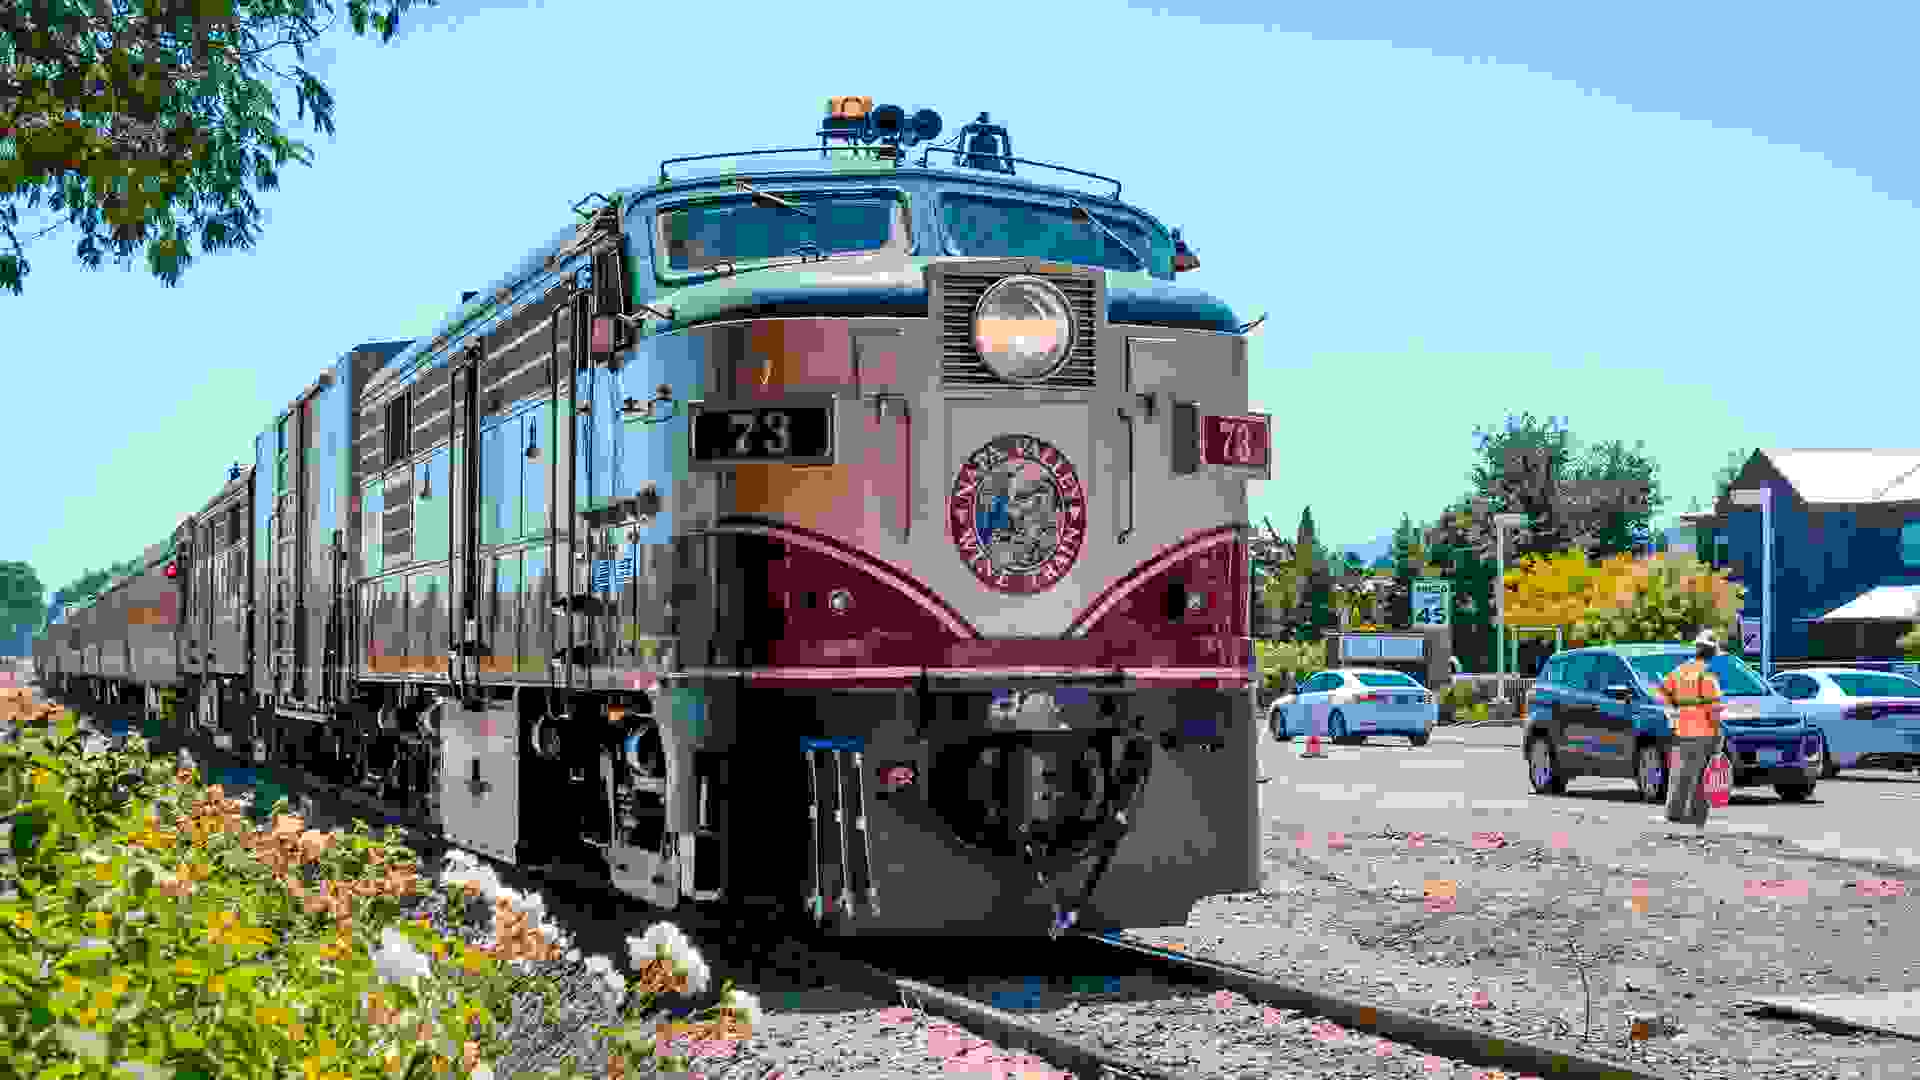 Napa, CA / USA - July 15, 2015: The Napa Valley Wine Train.